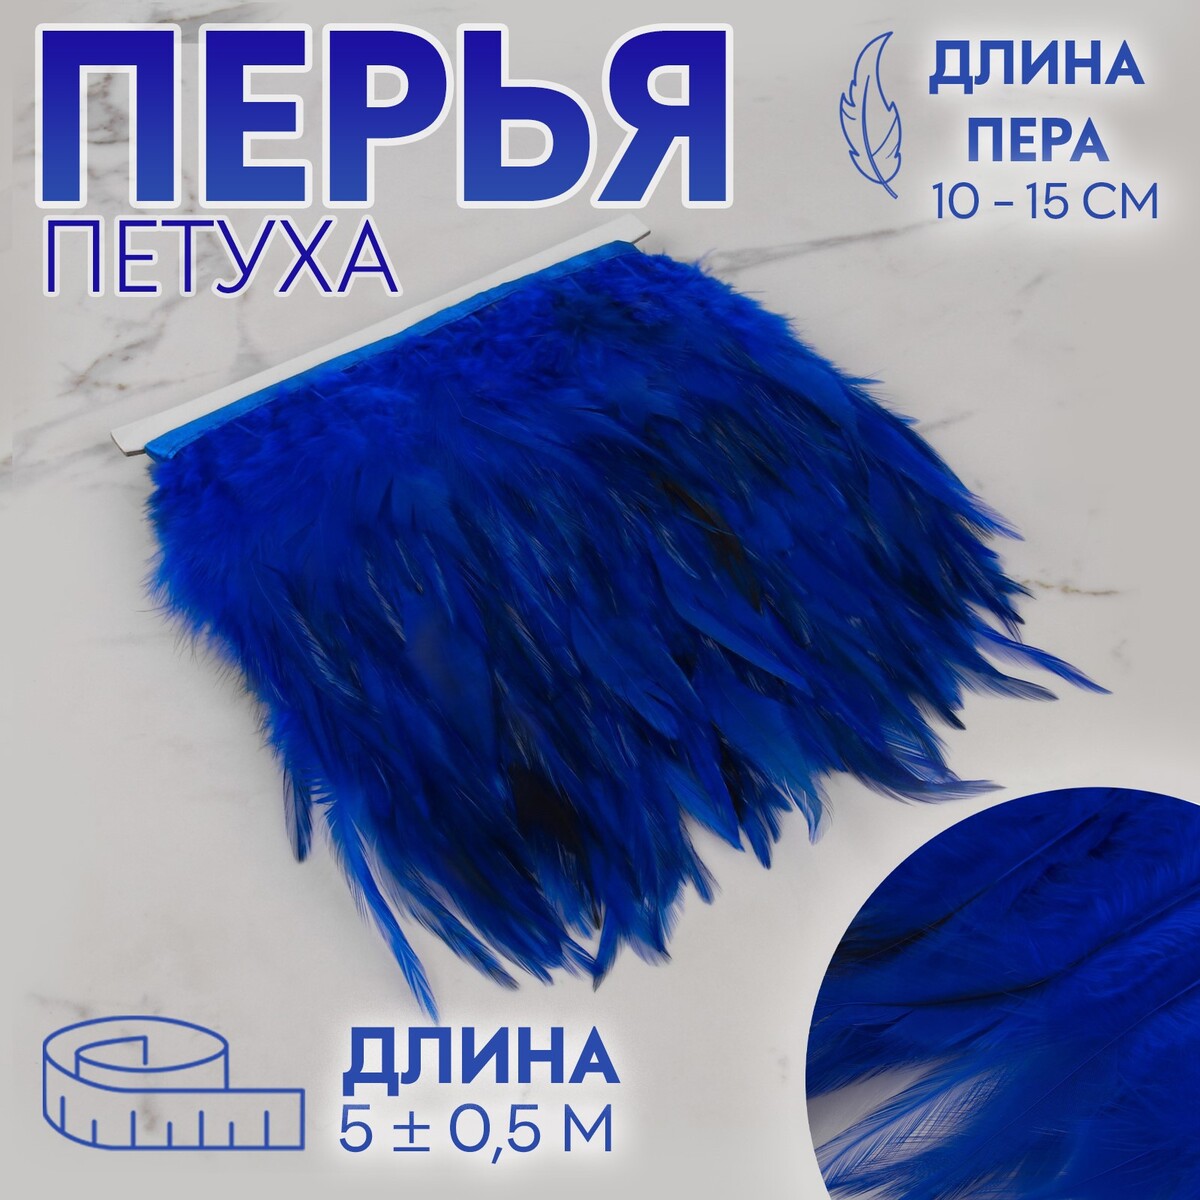 Тесьма с перьями петуха, 10-15 см, 5 ± 0,5 м, цвет синий тесьма с перьями страуса 8 10 см 5 ± 0 5 м бордовый